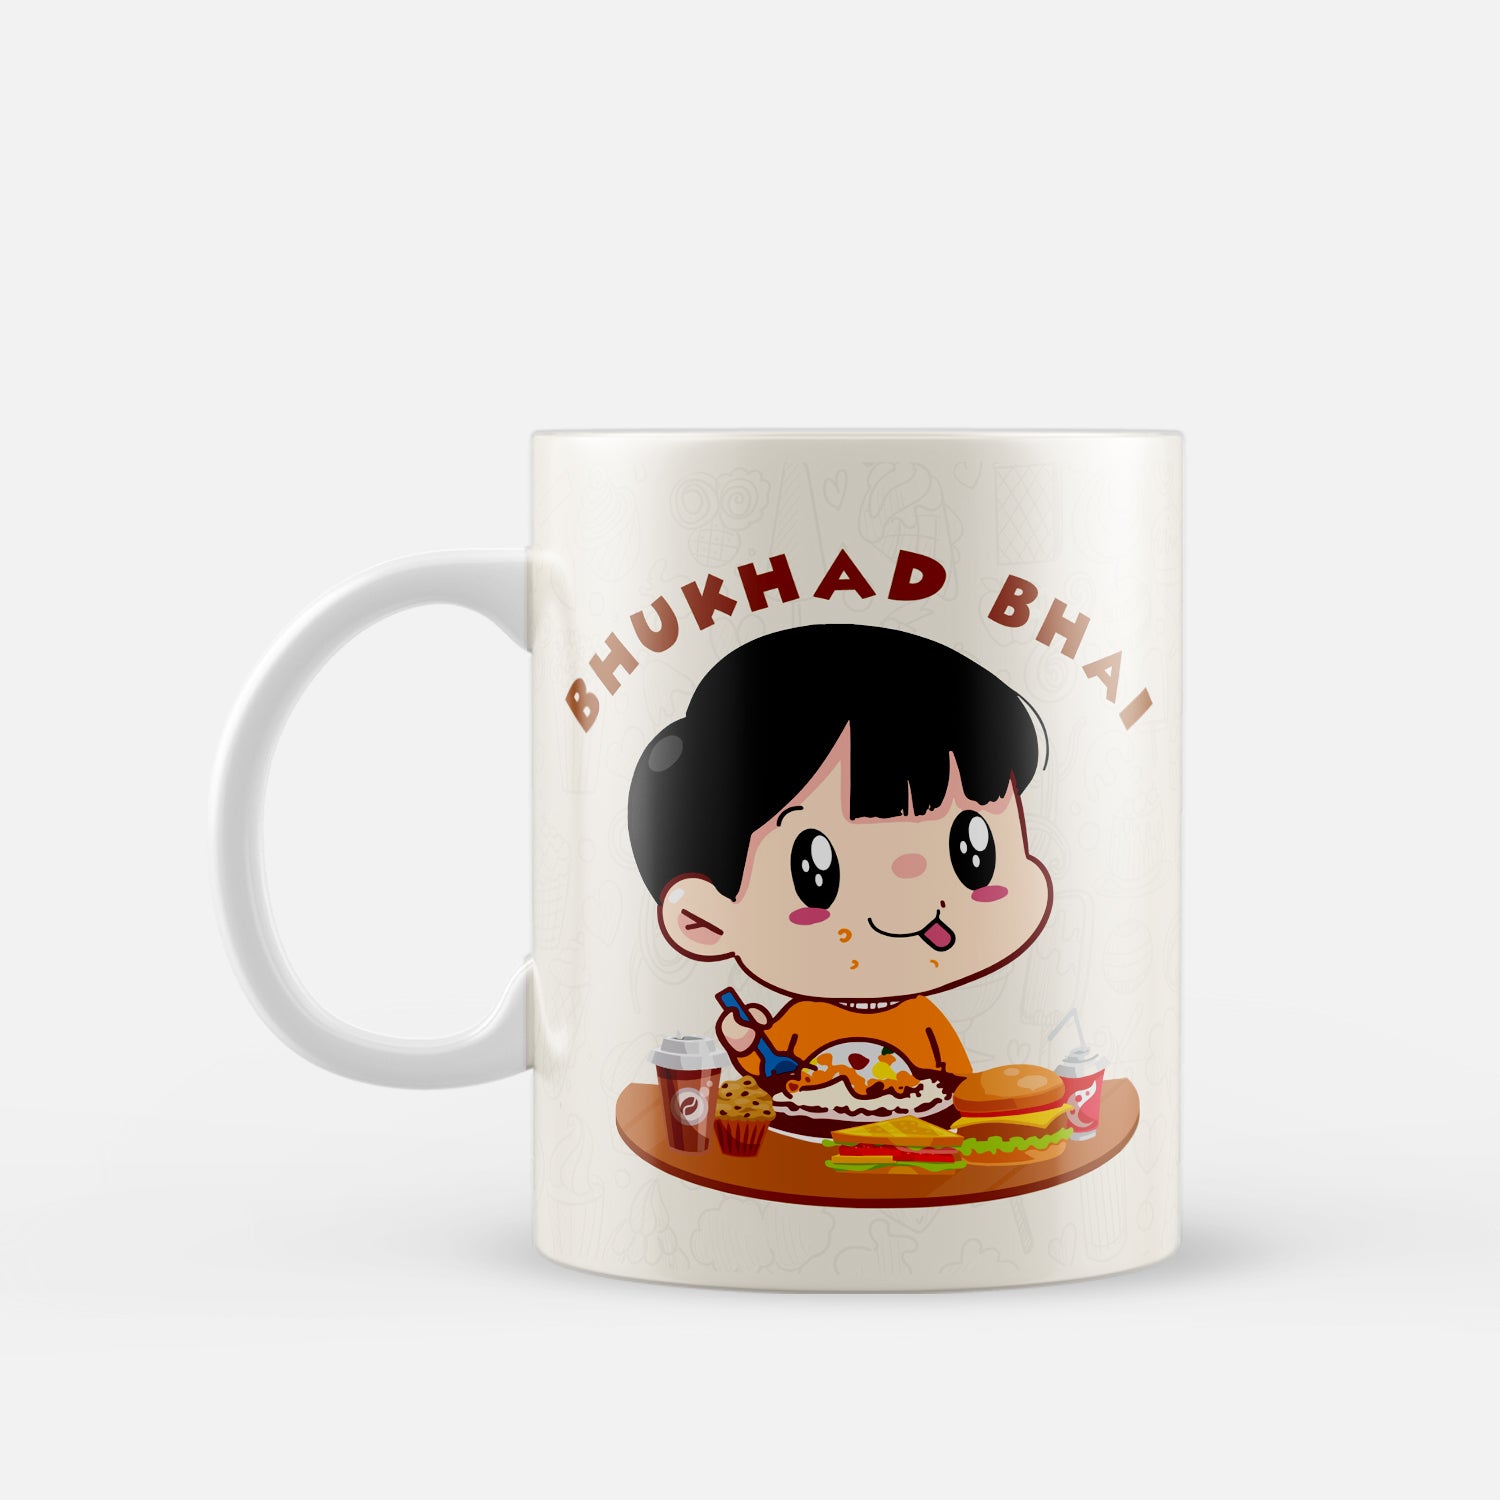 "Bhukhad Bhai" Brother Ceramic Coffee/Tea Mug 2